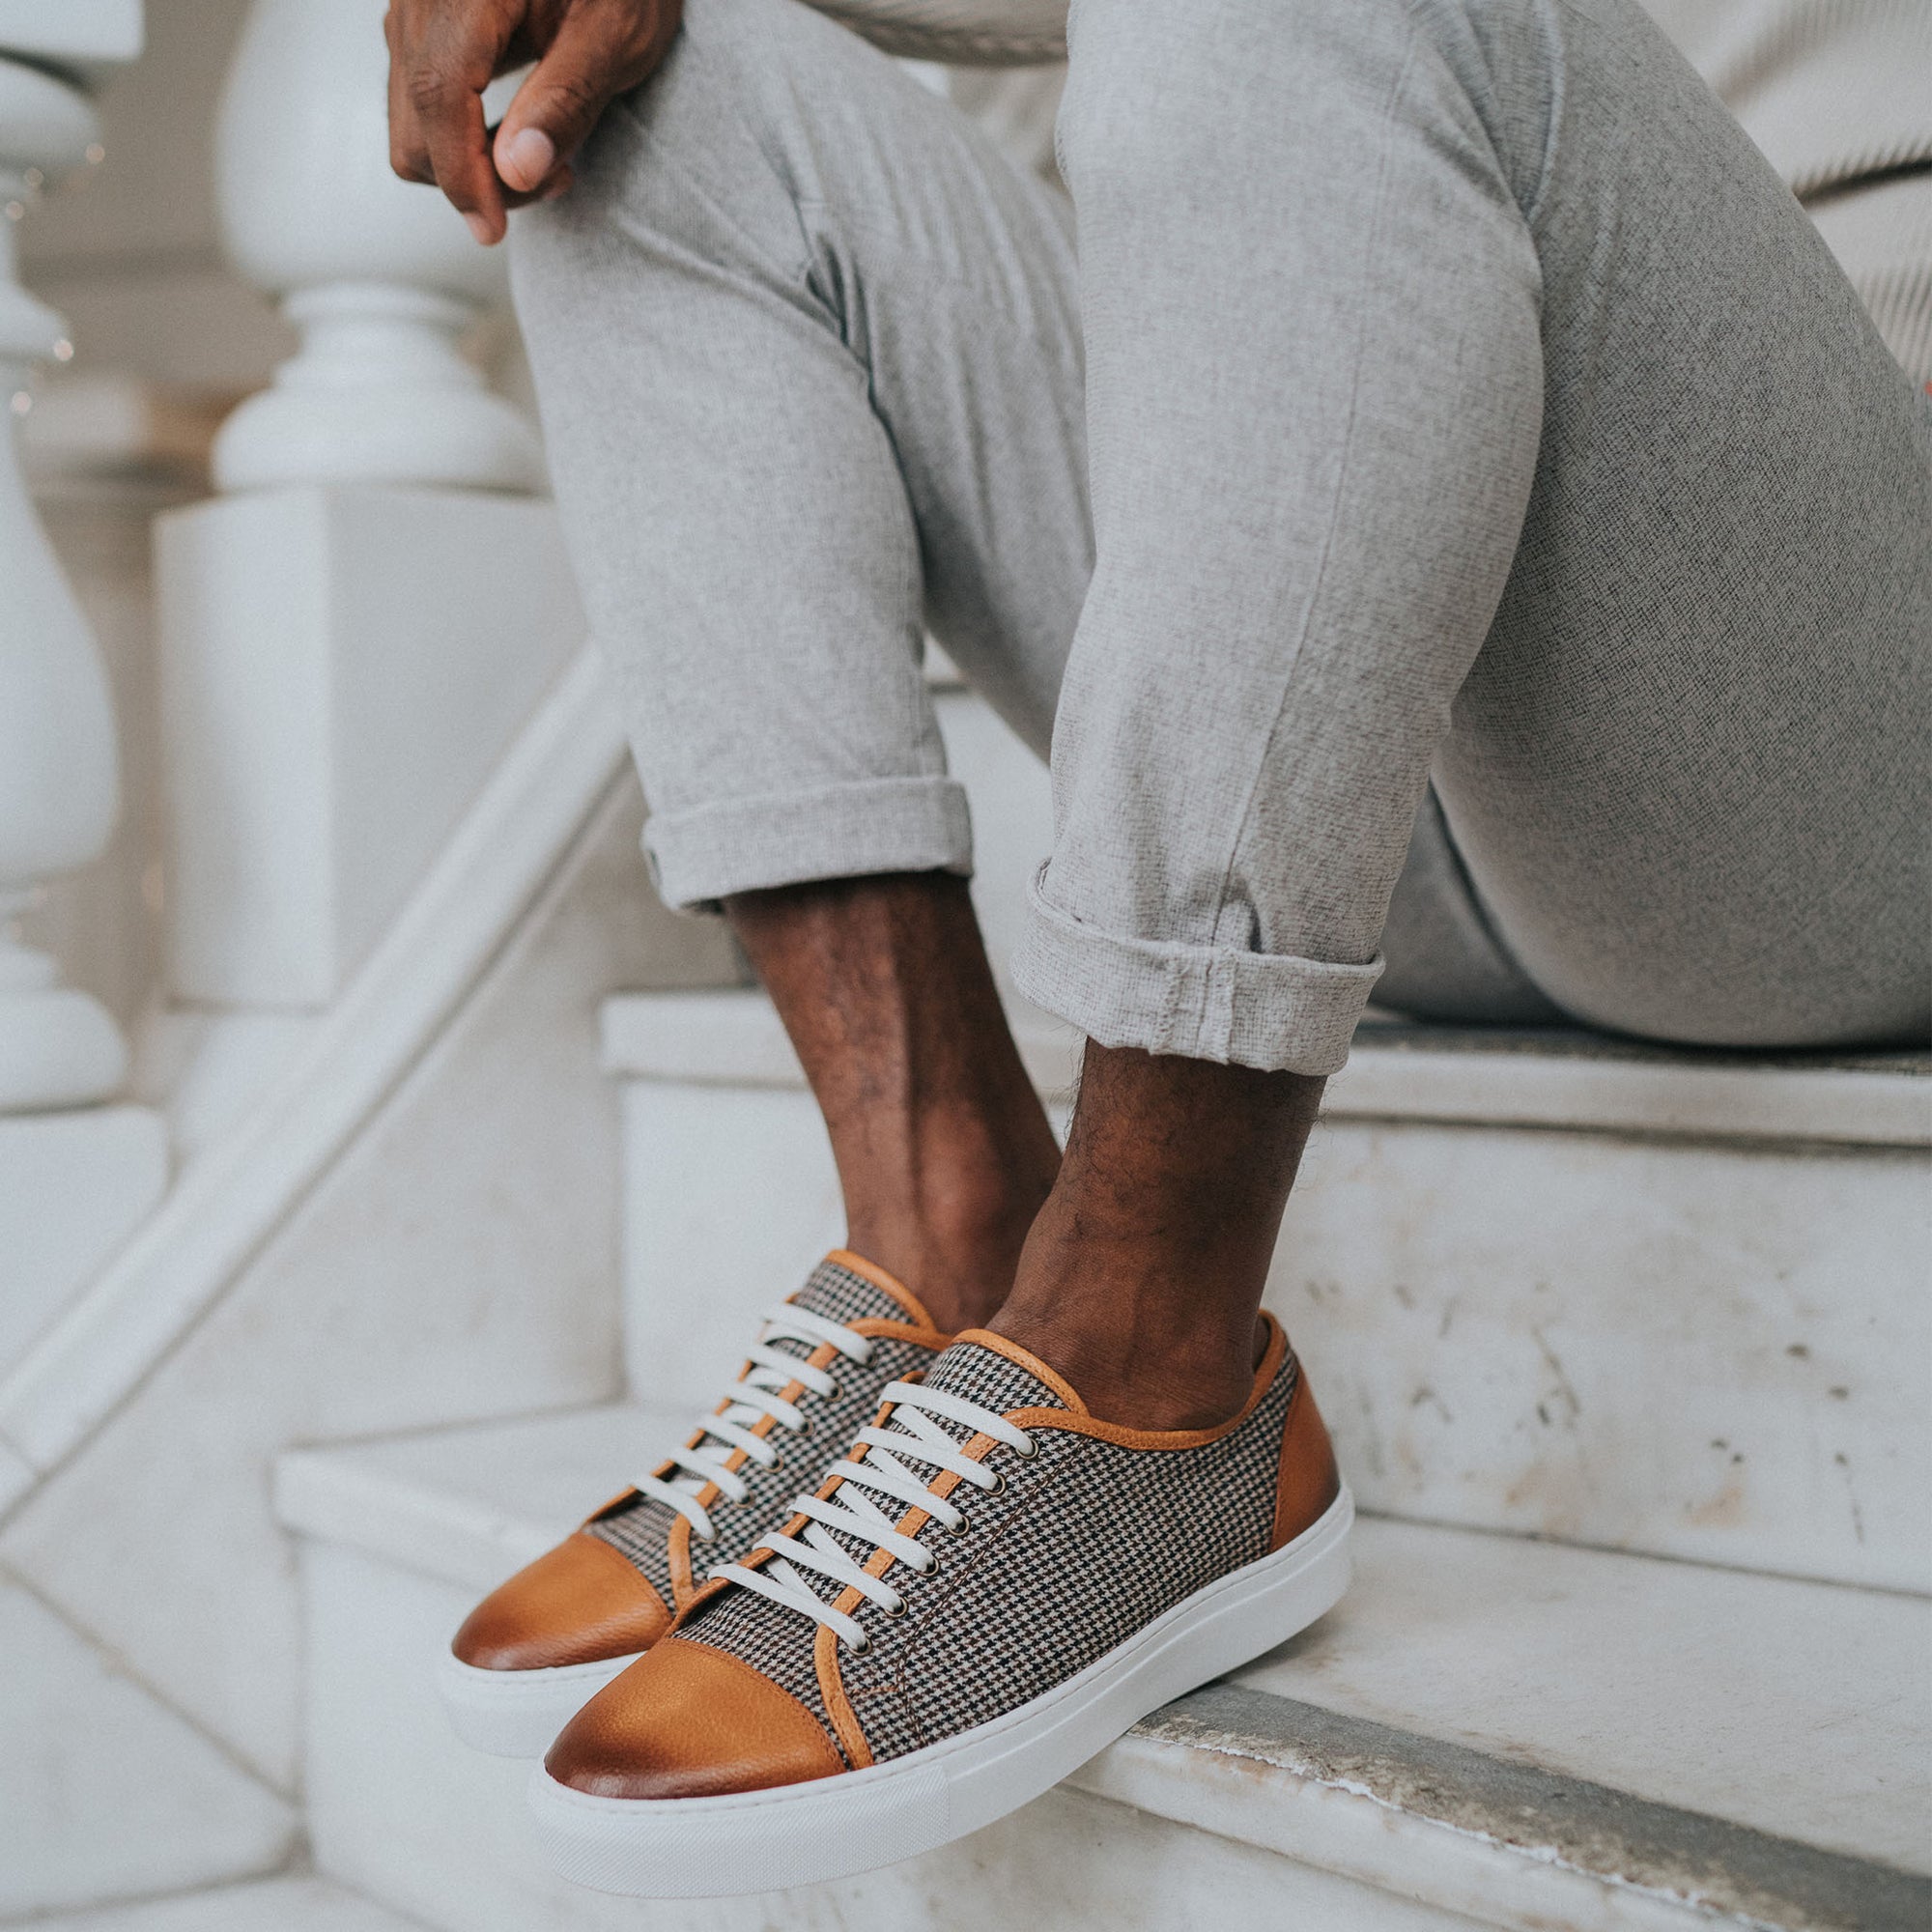 Jack Sneaker in Honey on Model sitting on white steps wearing grey cuffed pants